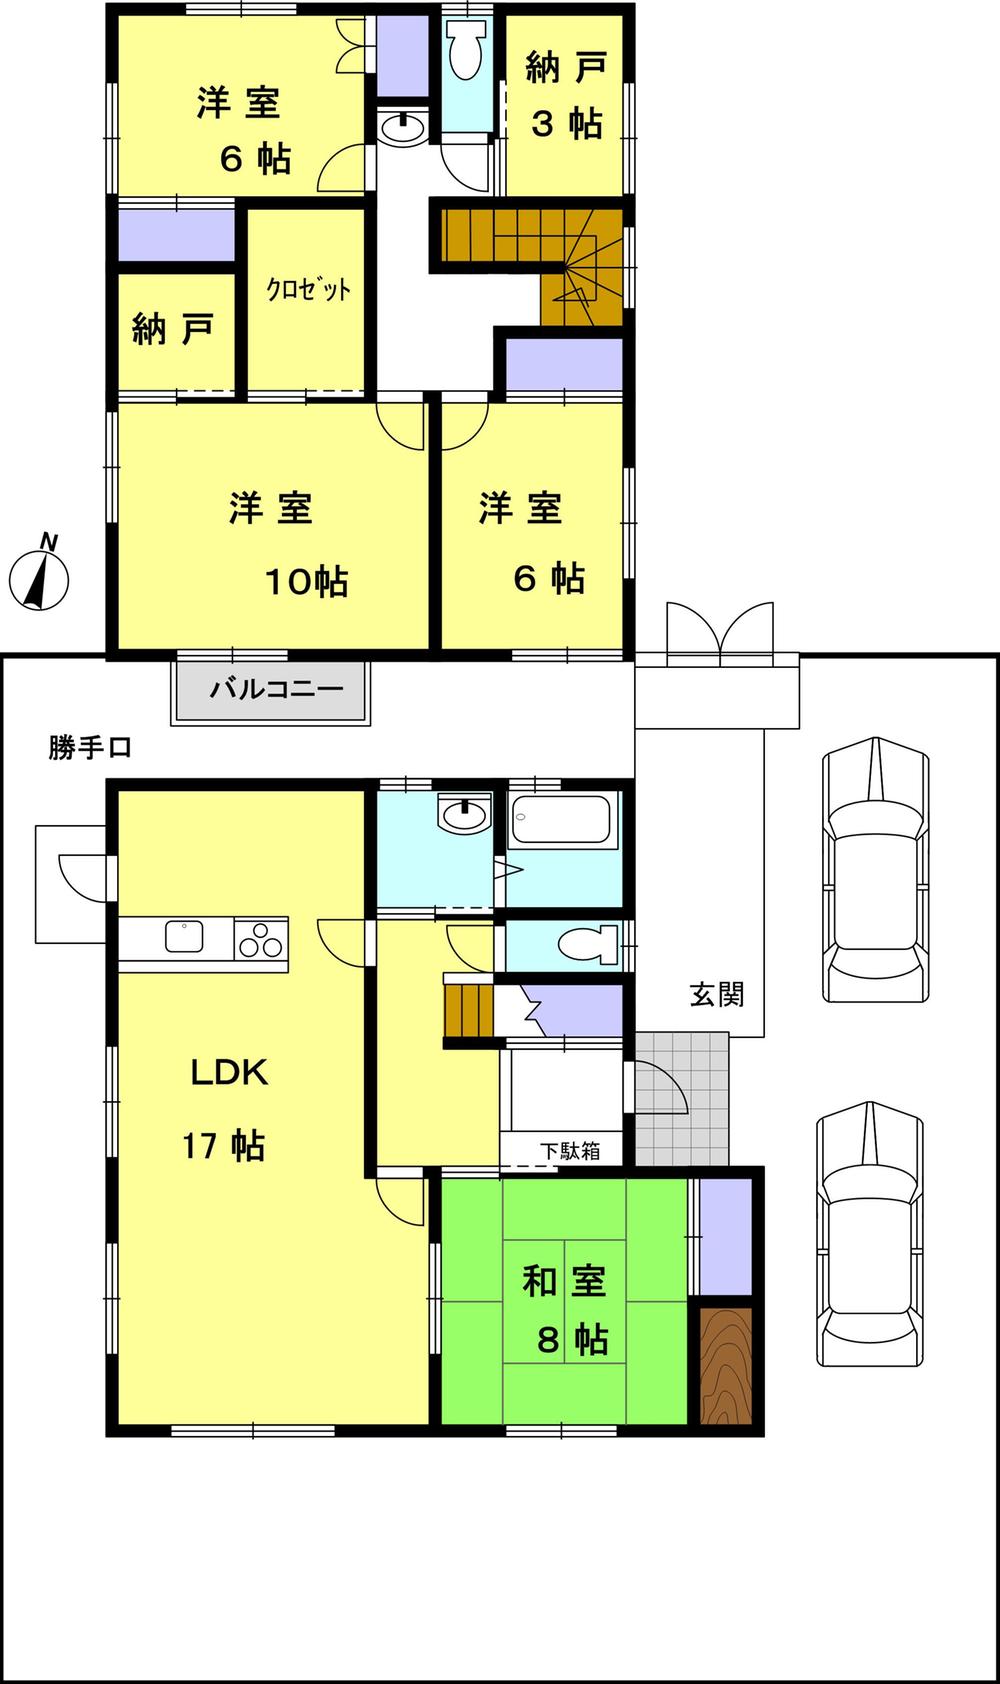 Floor plan. 19,800,000 yen, 4LDK + 2S (storeroom), Land area 200.89 sq m , Building area 139.11 sq m